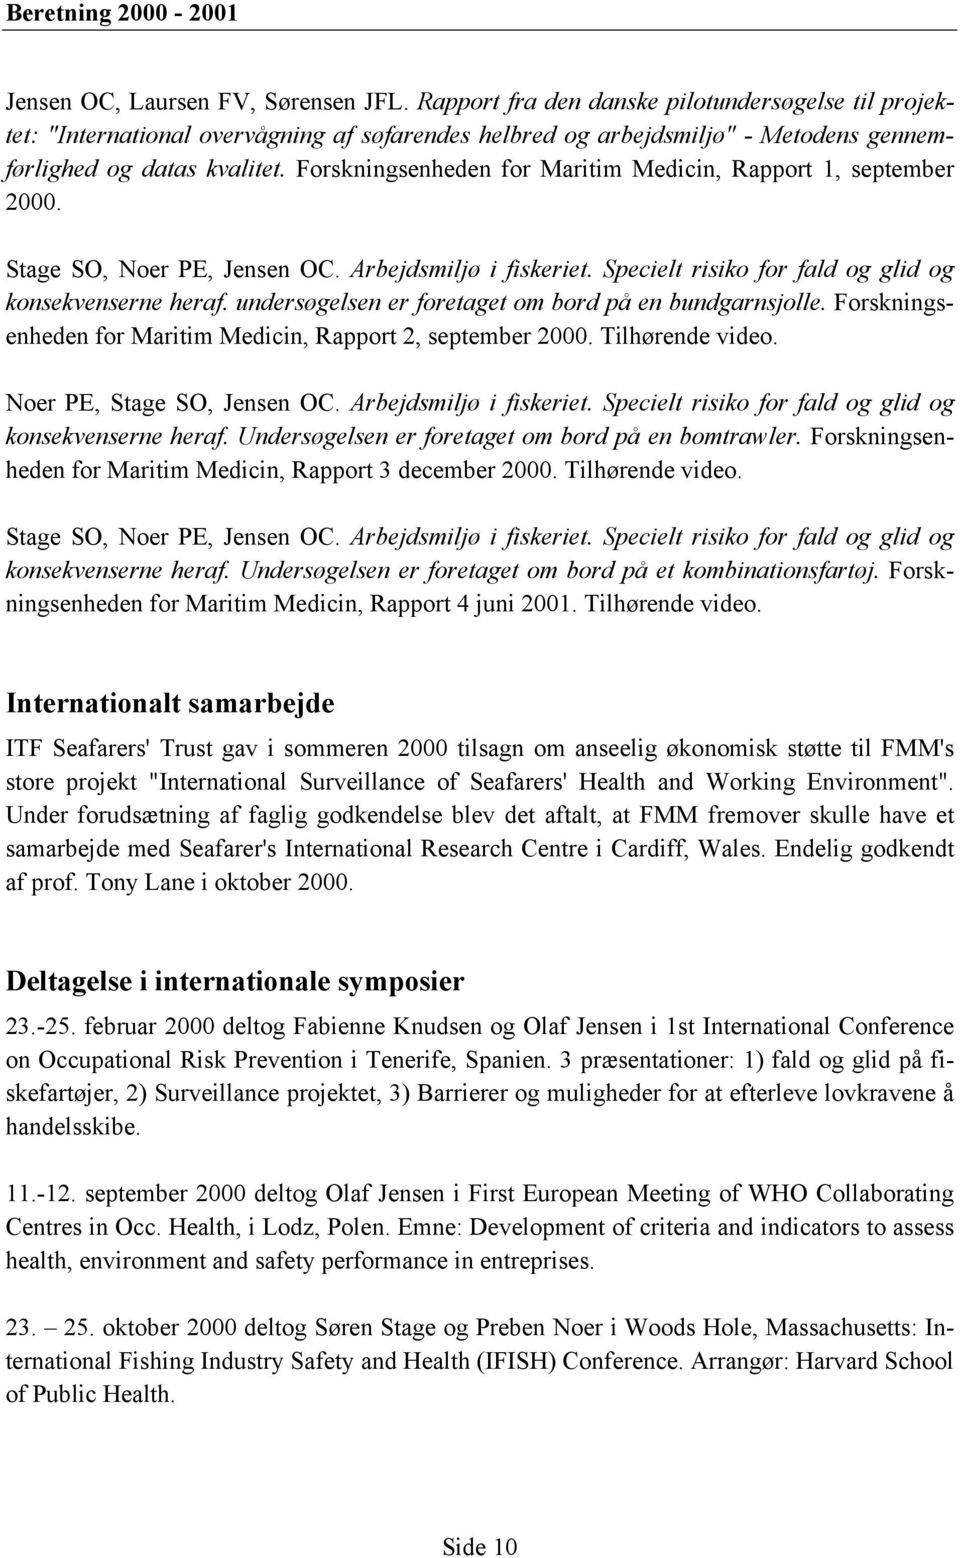 Forskningsenheden for Maritim Medicin, Rapport 1, september 2000. Stage SO, Noer PE, Jensen OC. Arbejdsmiljø i fiskeriet. Specielt risiko for fald og glid og konsekvenserne heraf.